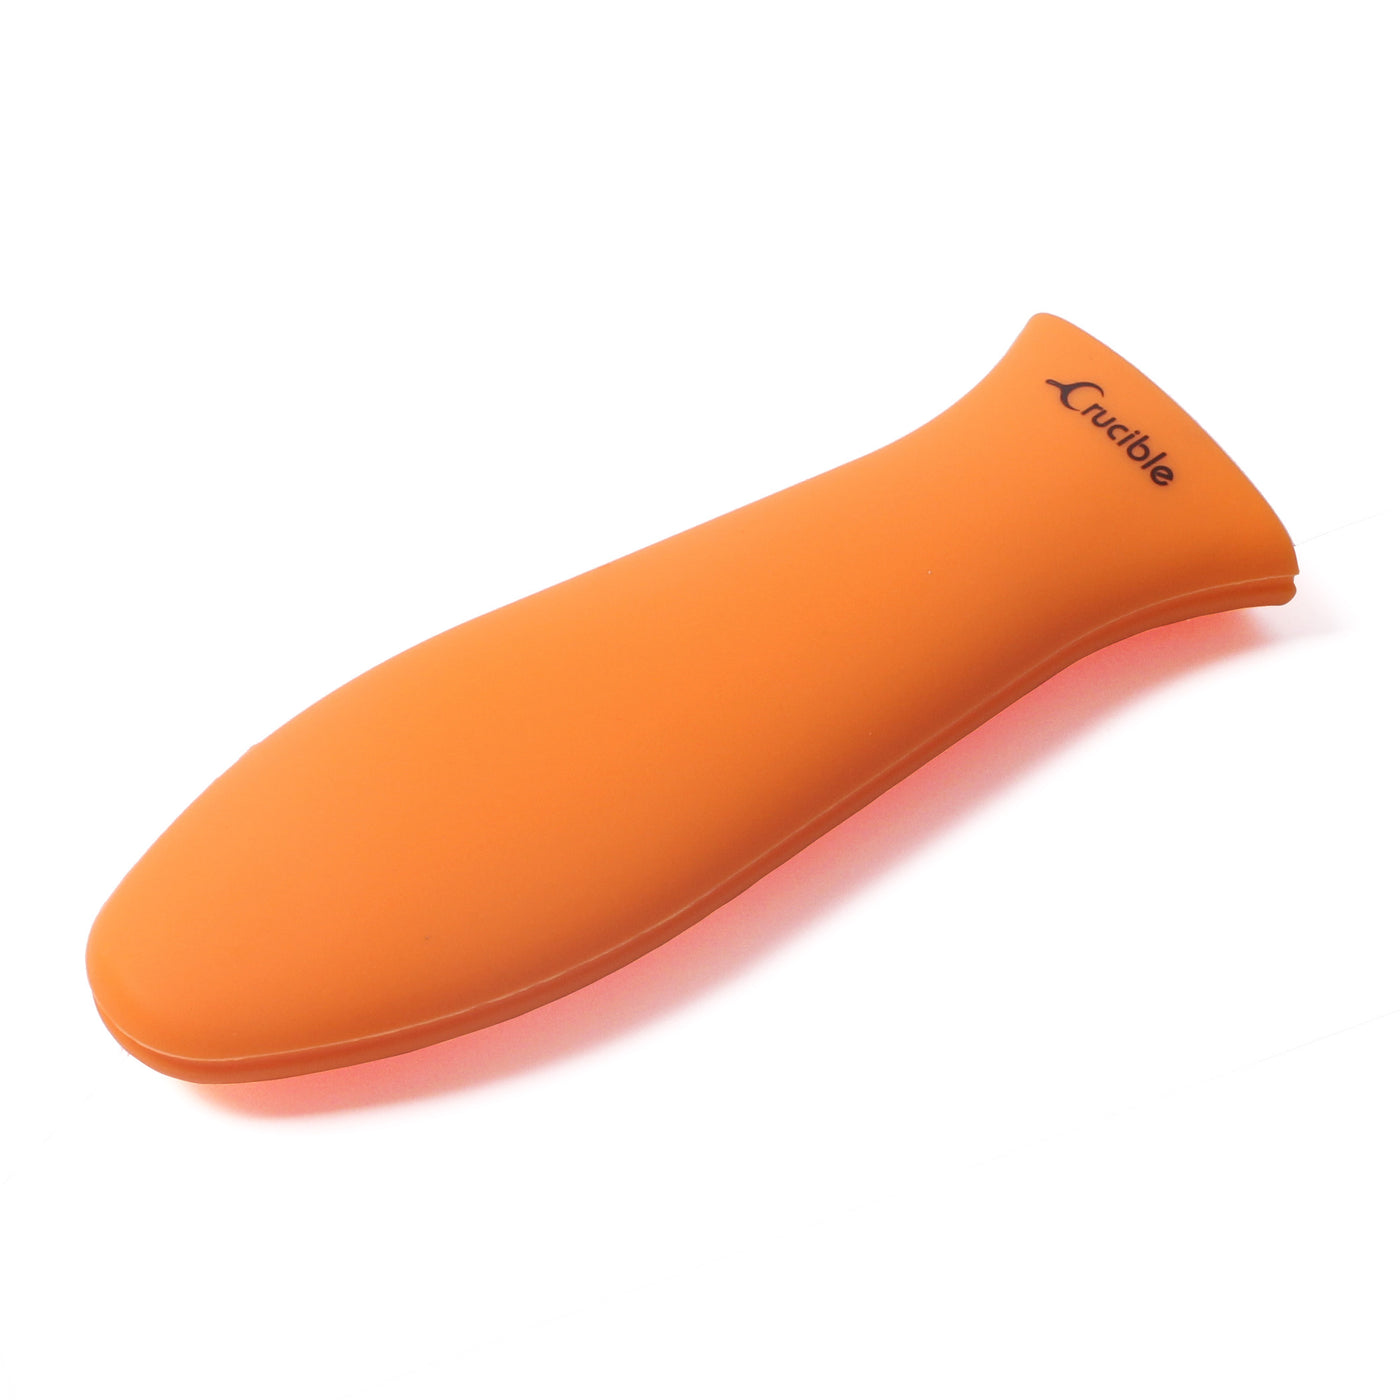 硅胶热手柄支架、隔热垫（橙色大号）、套筒握把、手柄盖